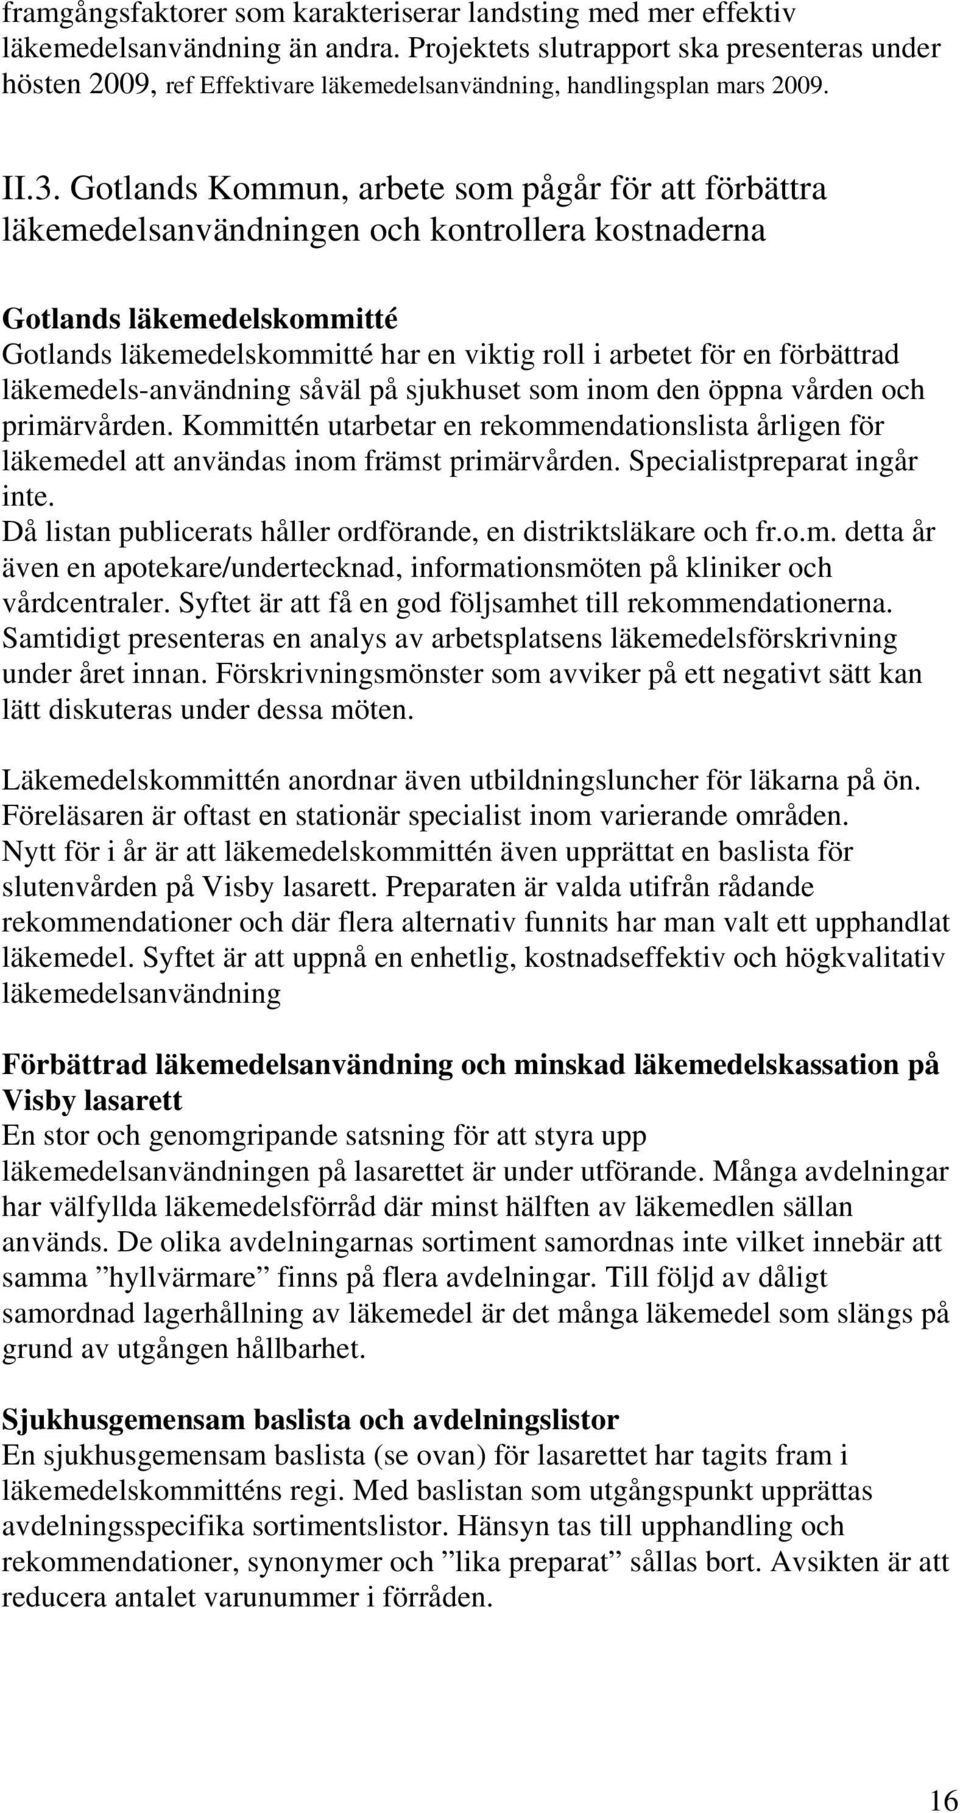 Gotlands Kommun, arbete som pågår för att förbättra läkemedelsanvändningen och kontrollera kostnaderna Gotlands läkemedelskommitté Gotlands läkemedelskommitté har en viktig roll i arbetet för en